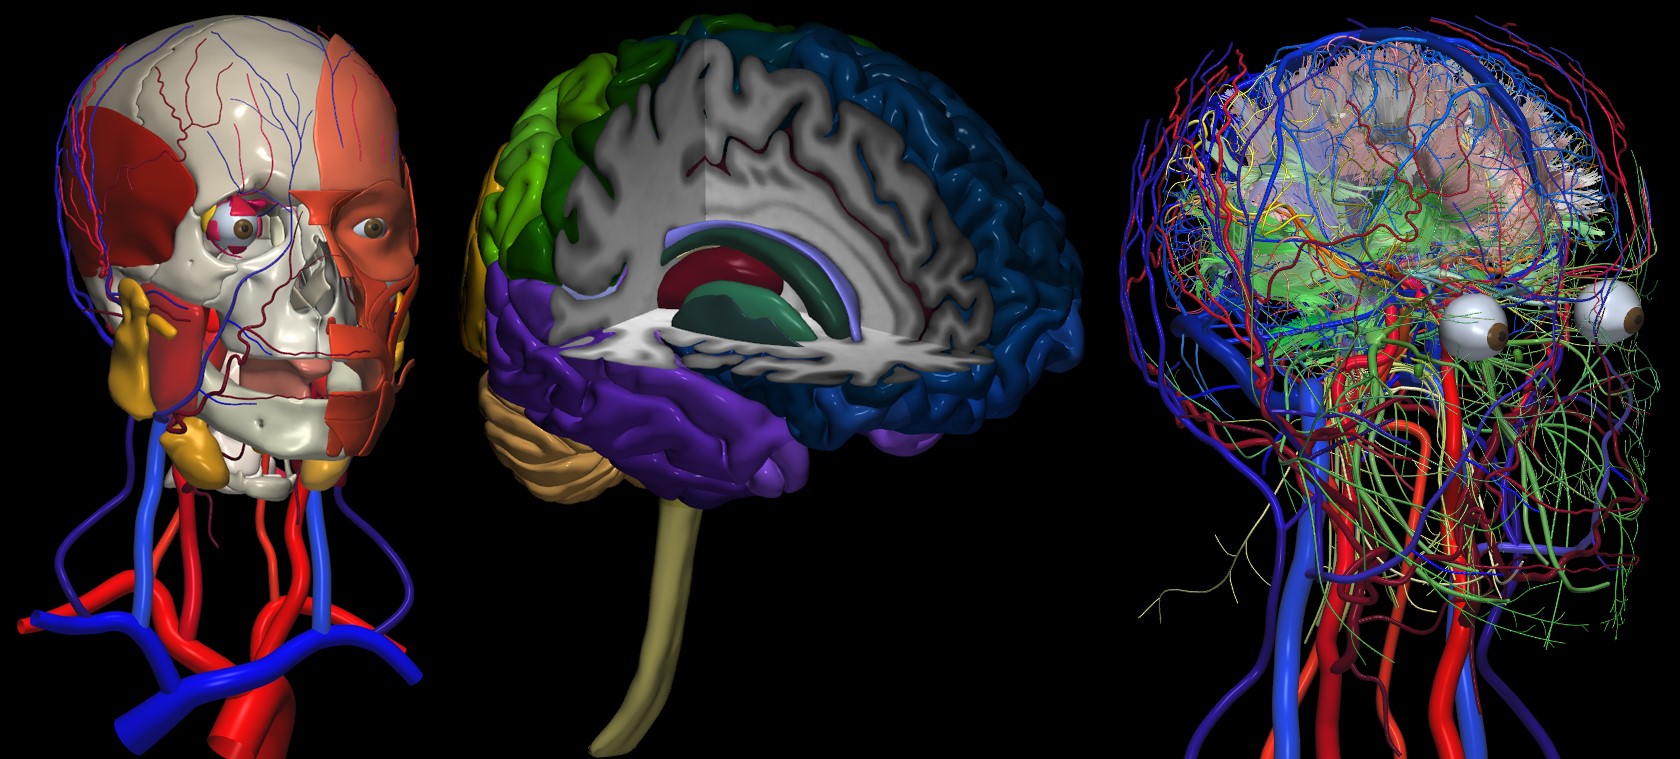 Brains brains brains слушать. Изучение головного мозга человека. Компьютерное моделирование мозга.